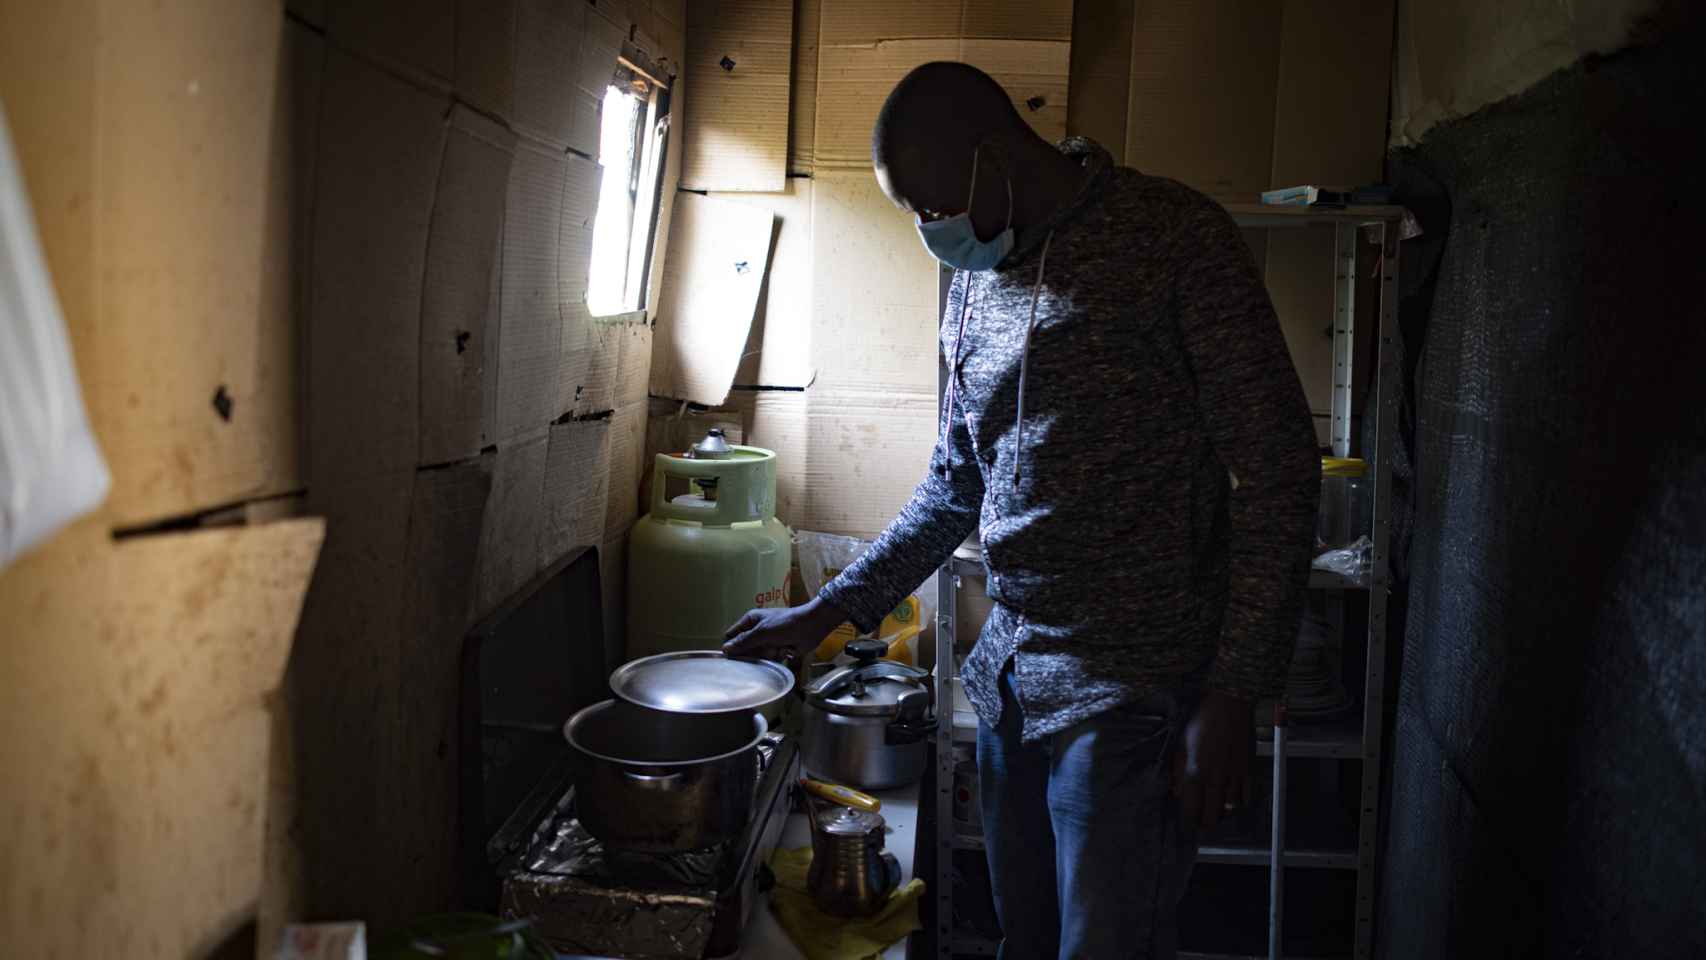 Chaikre Touré, también maliense, accede a que entremos en su casa.